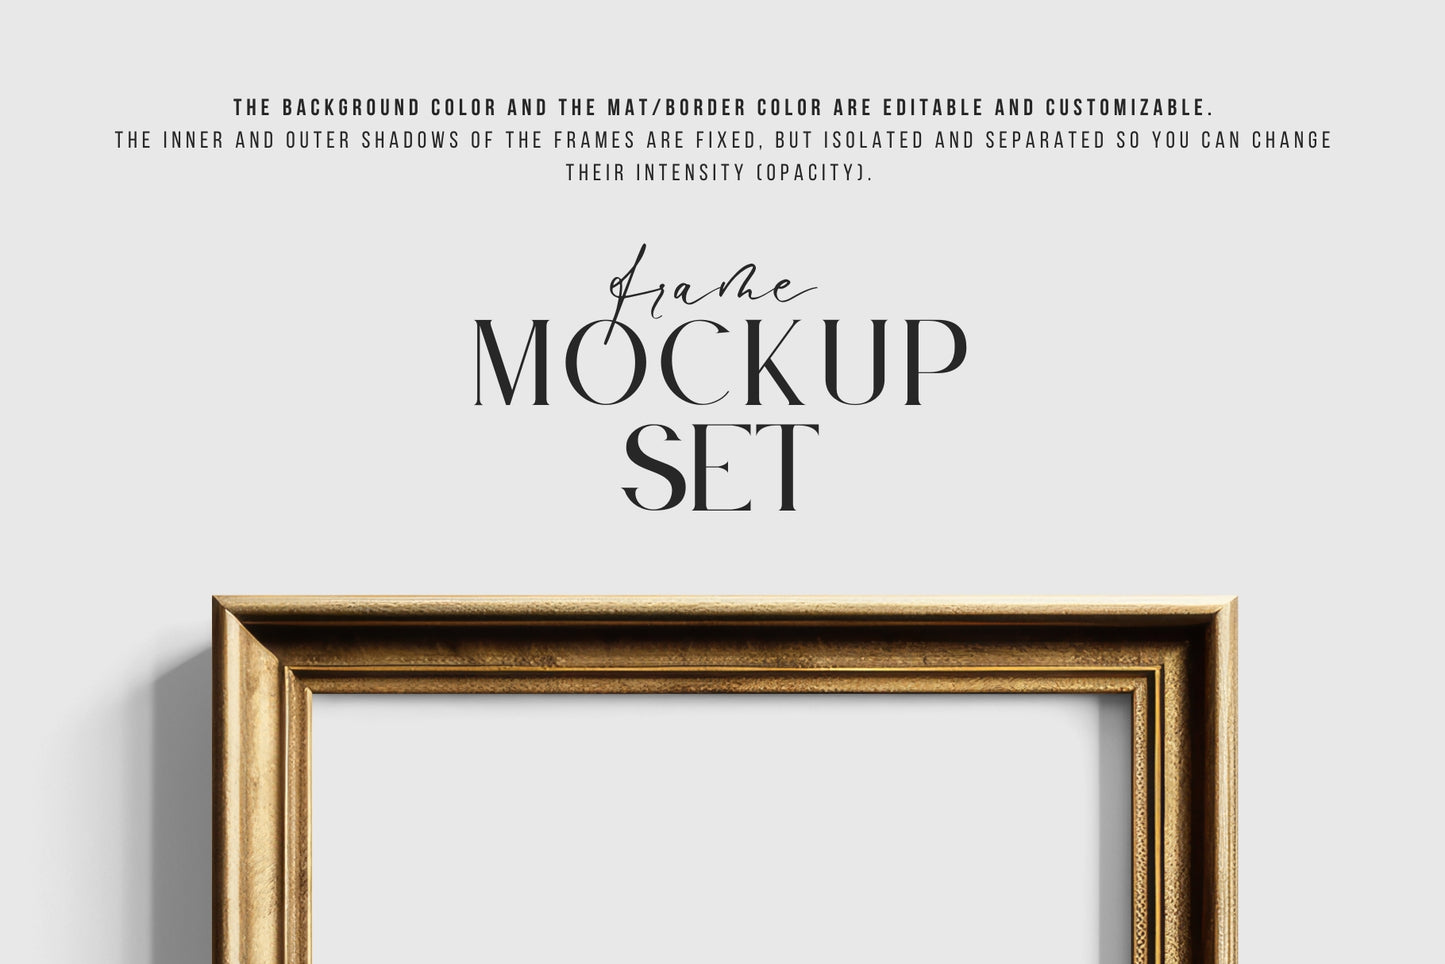 Metallic Frame Mockup Set of 2 Vertical Frames 3:4 | Vintage Gold Frame Mockup Set | PSD Template + Transparent PNG Files